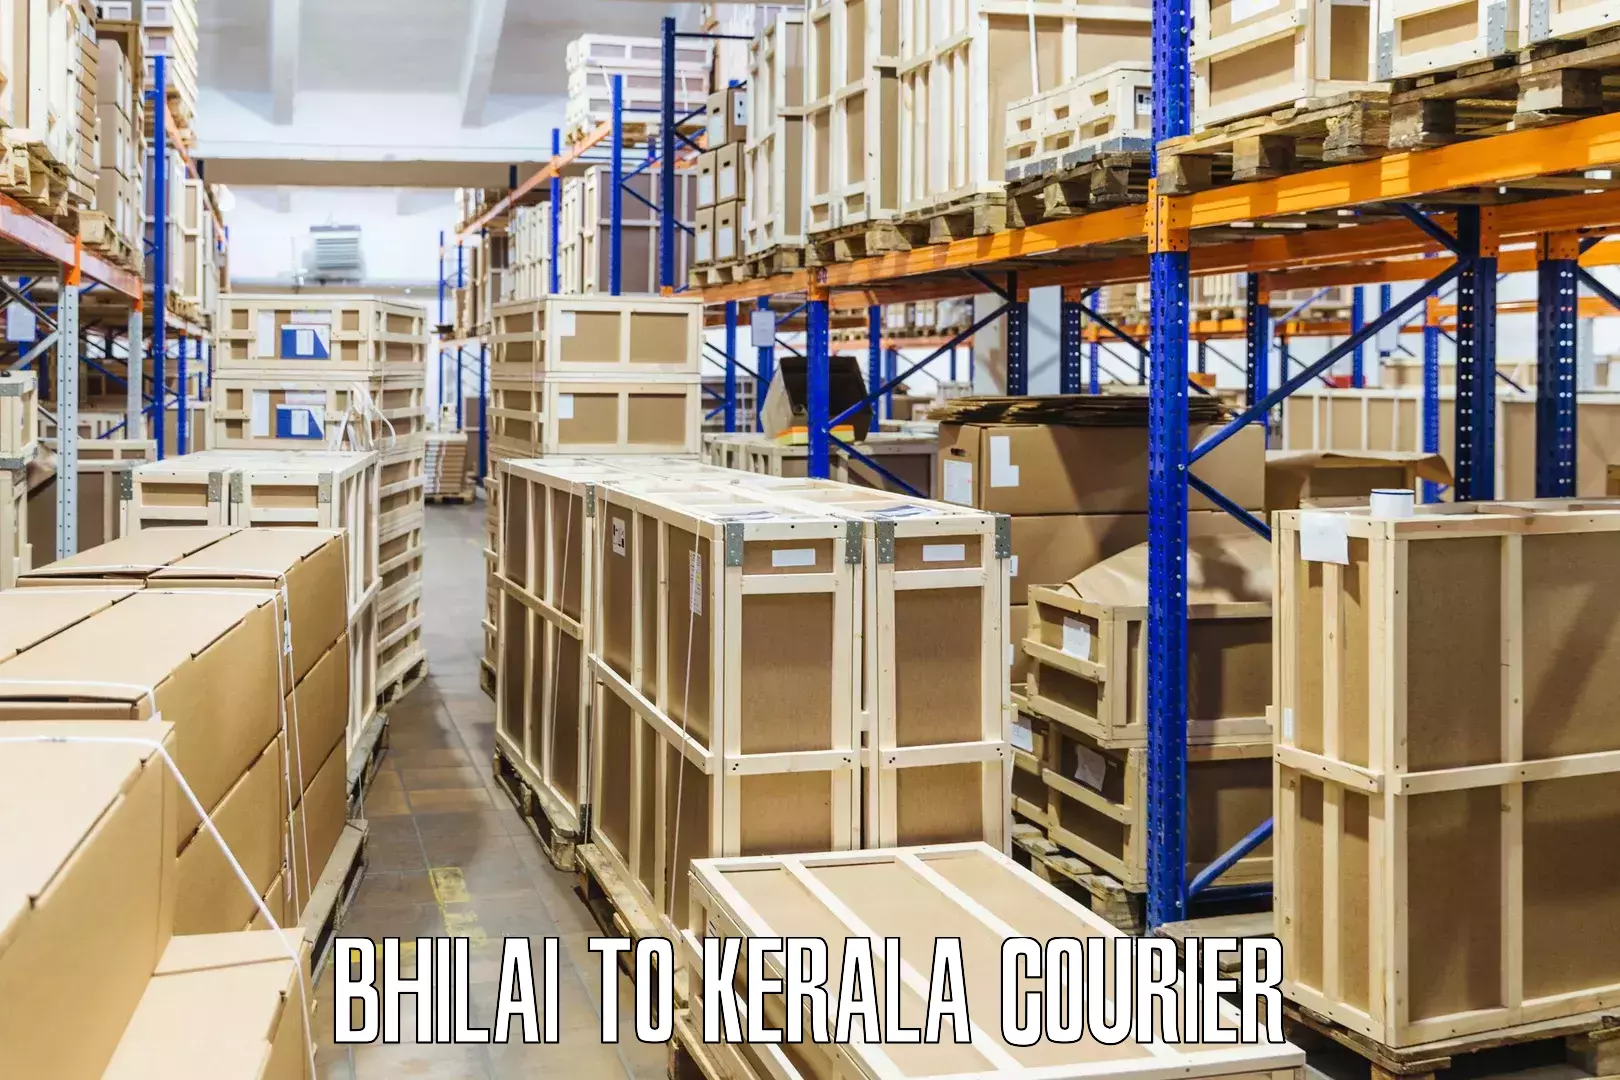 Global freight services Bhilai to Kerala